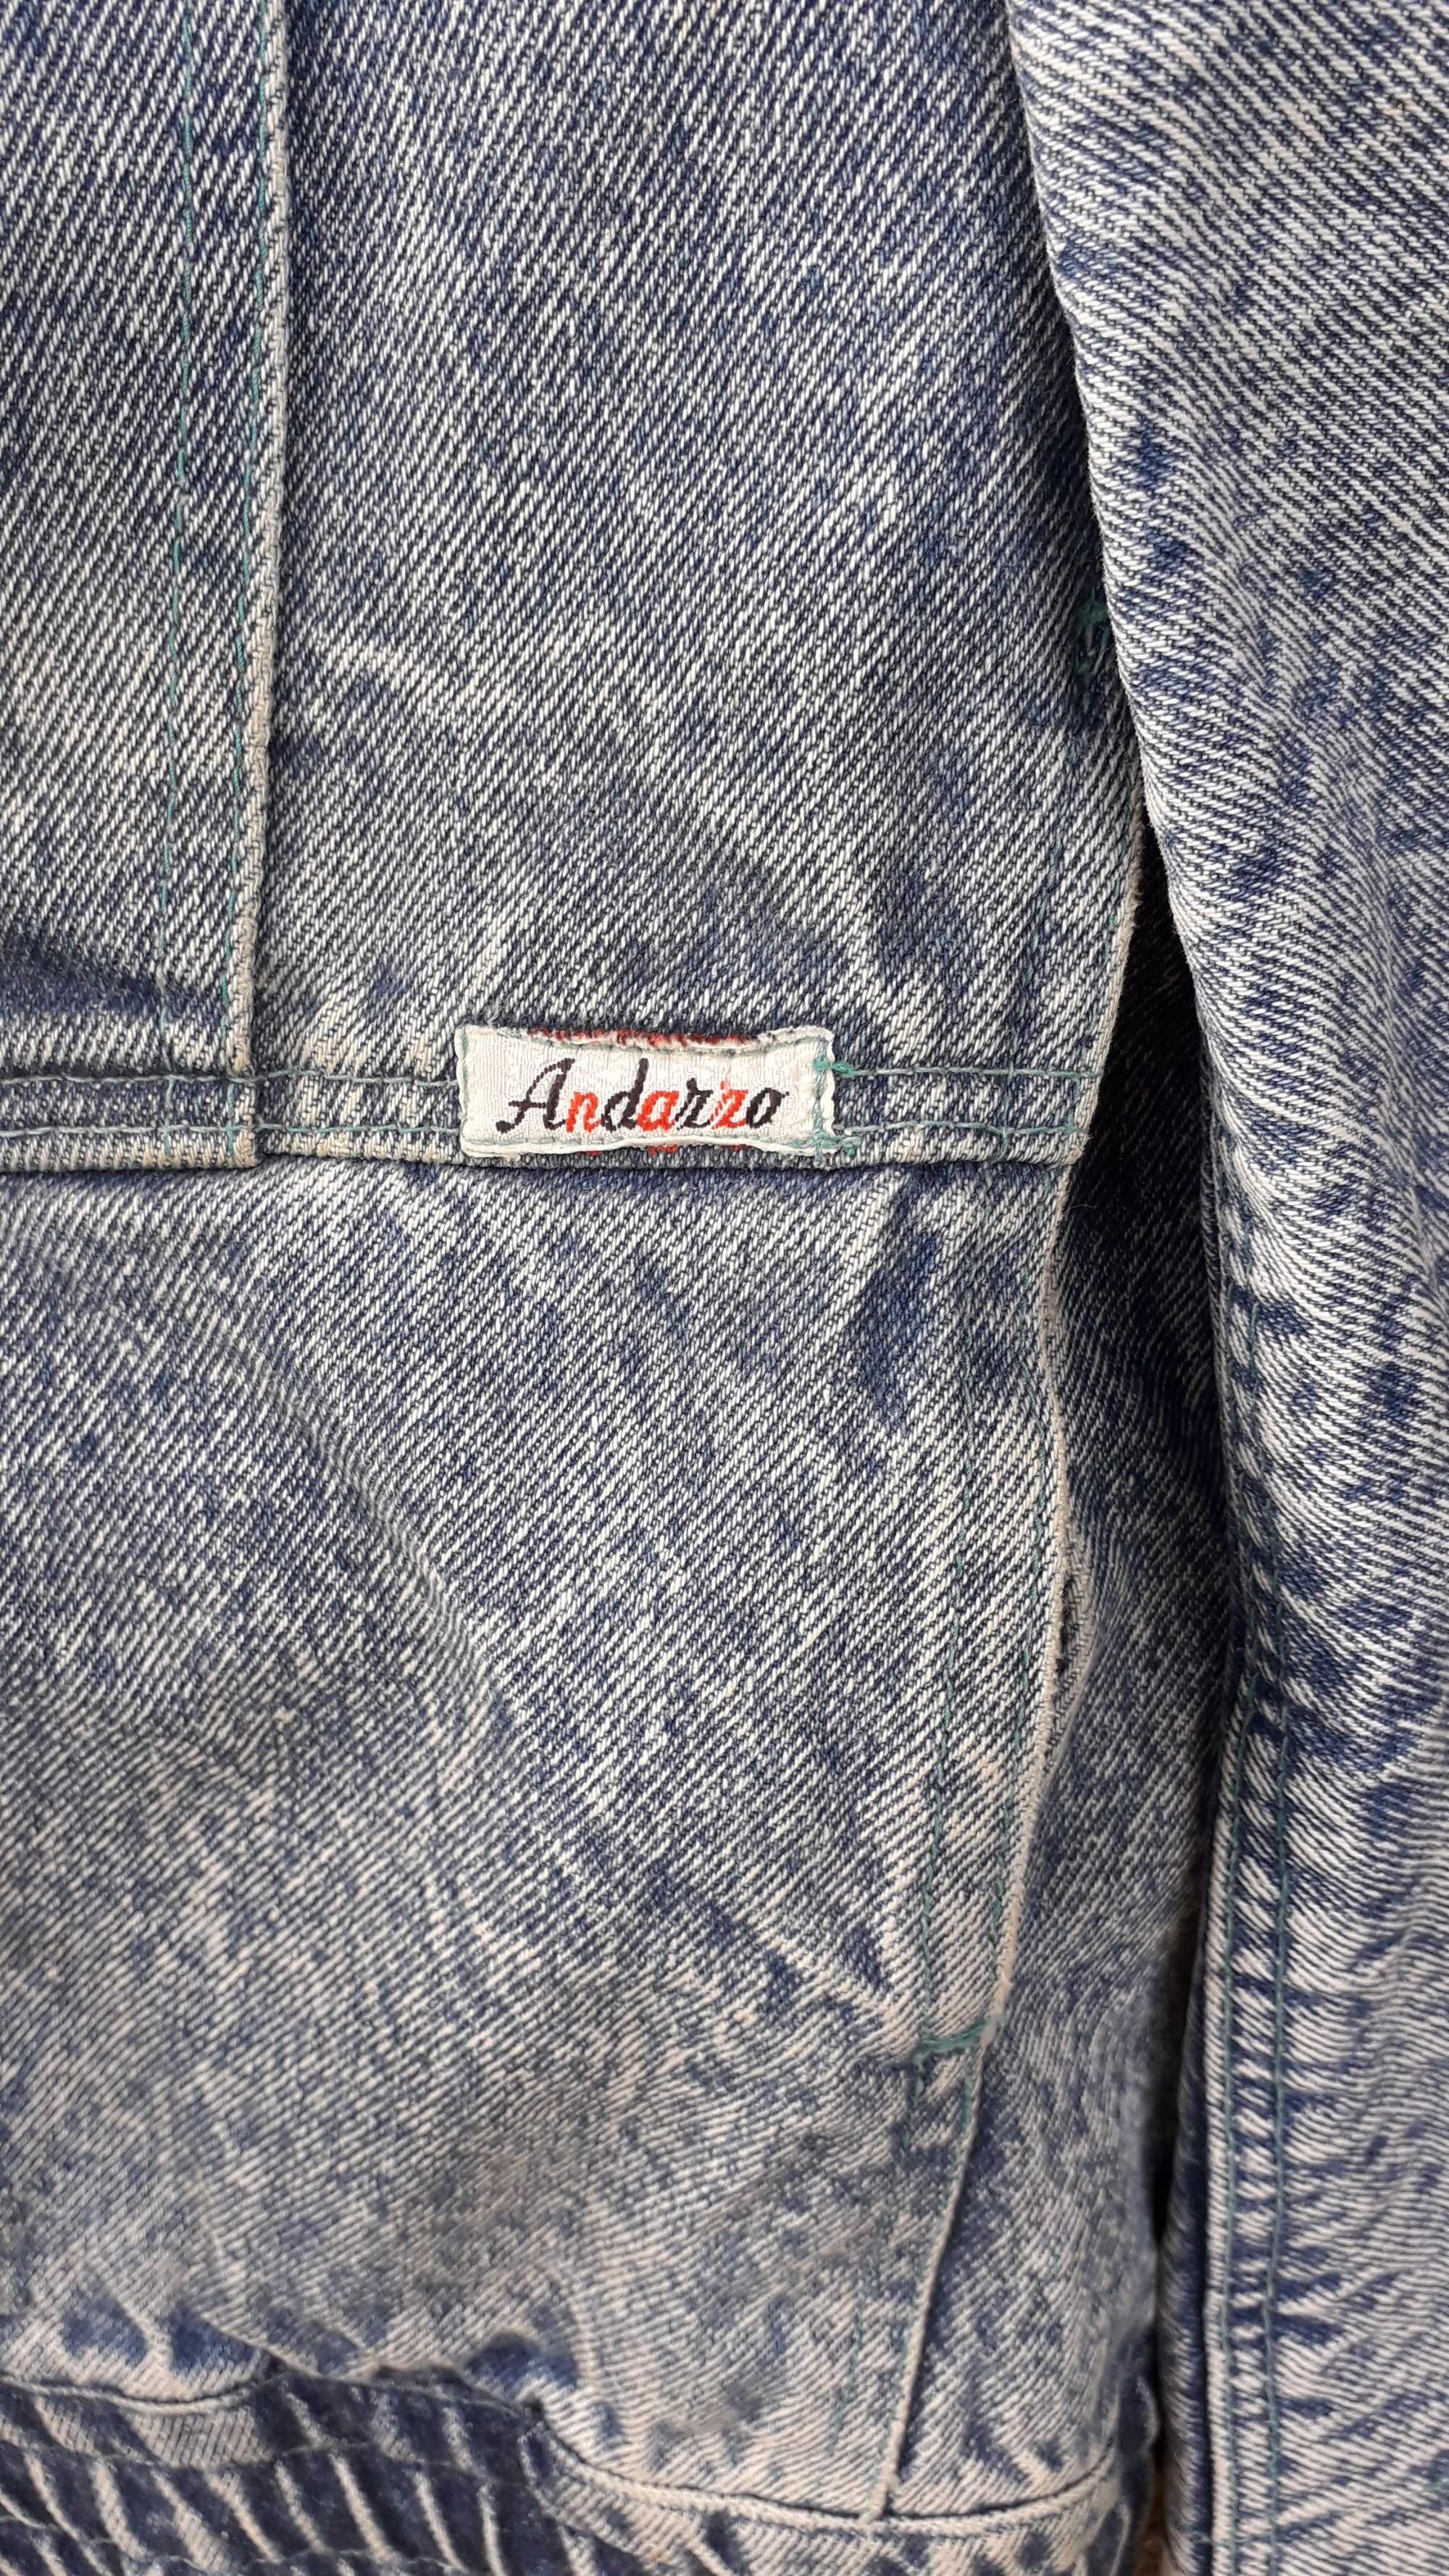 Stara kurtka / bluza jeansowa z lat 80'/90' rozmiar M